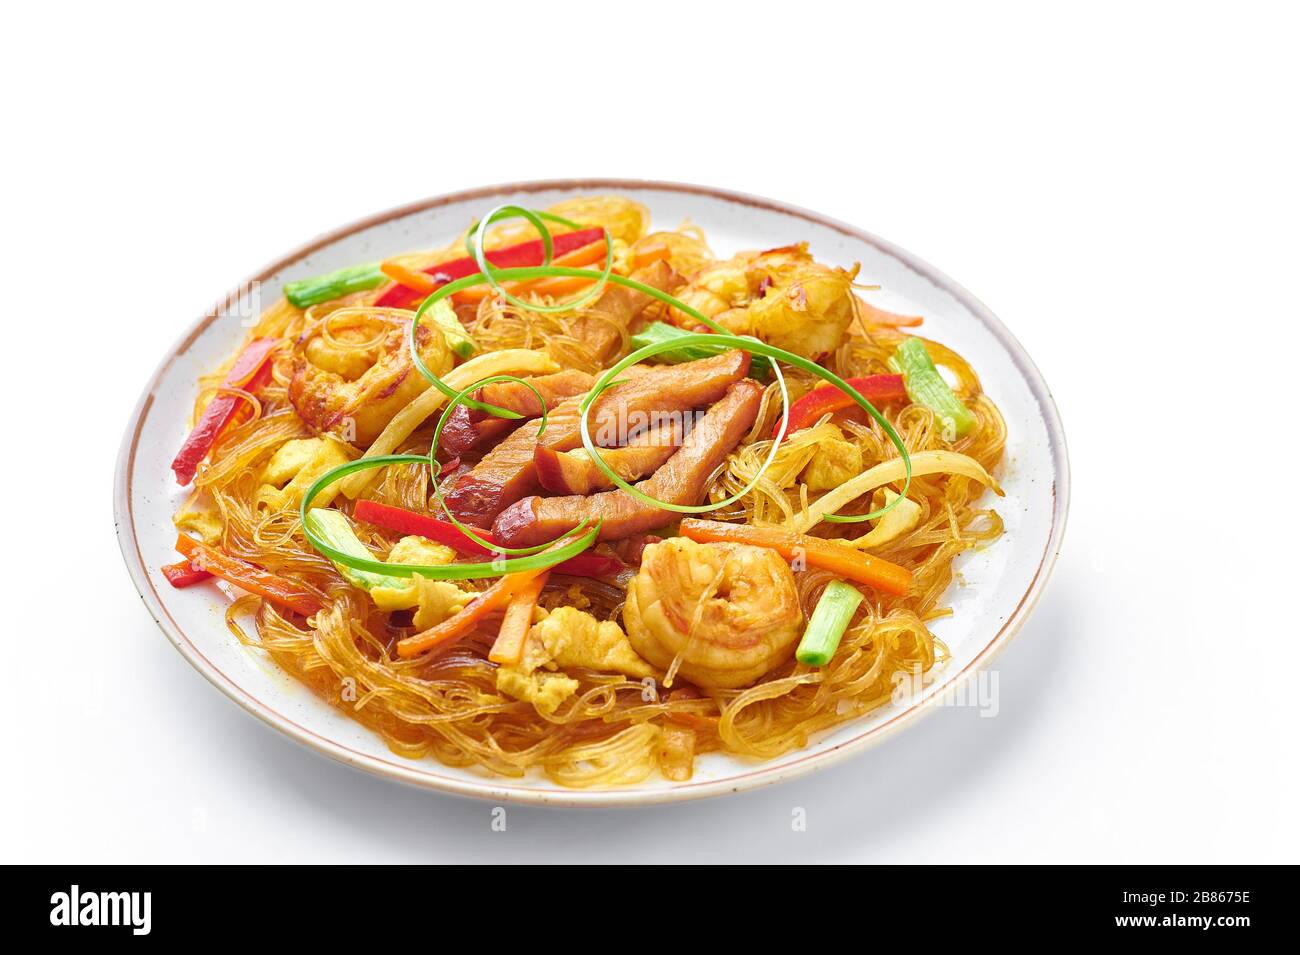 Singapore Mei Fun in piatto isolato su sfondo bianco. Singapore Noodles è un piatto di cucina cinese con tagliatelle di riso, gamberi, maiale char siu, carota, r Foto Stock